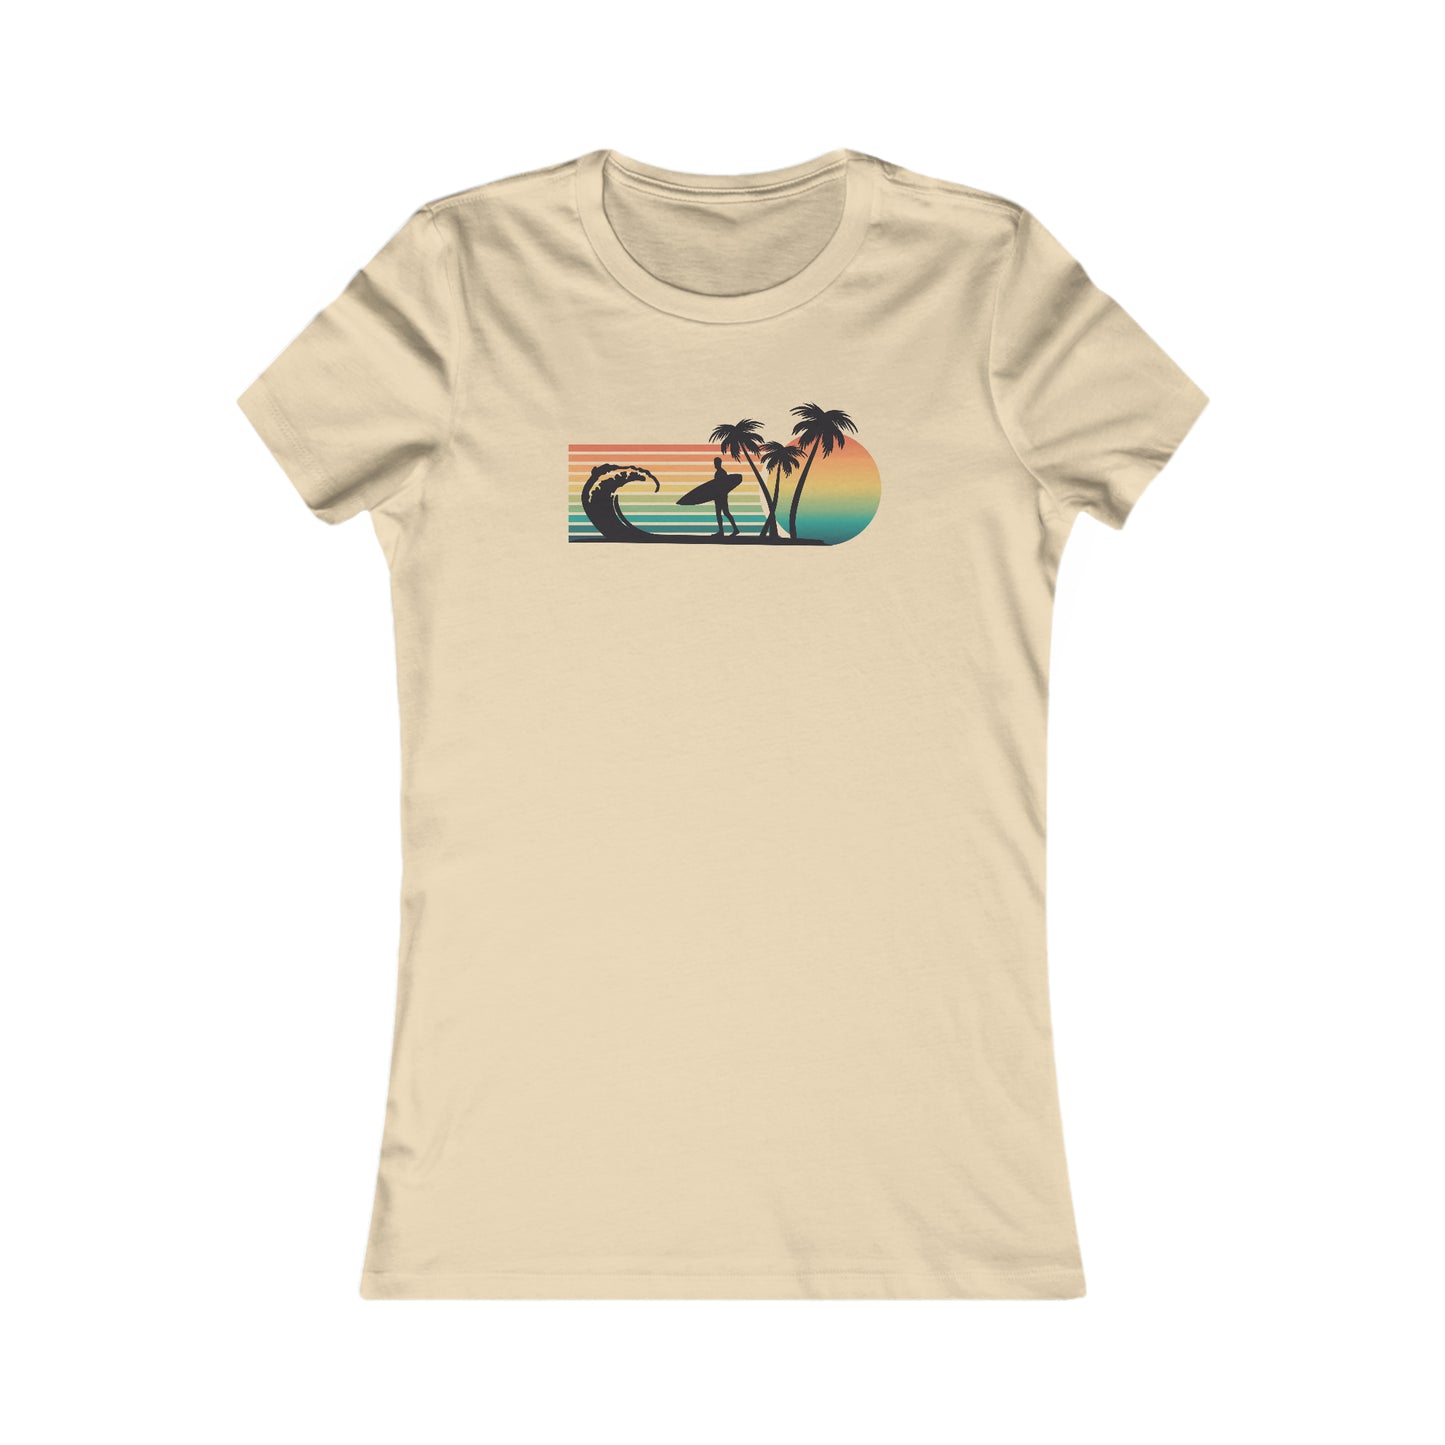 Surfer Silhouette - Women's Favorite Tee